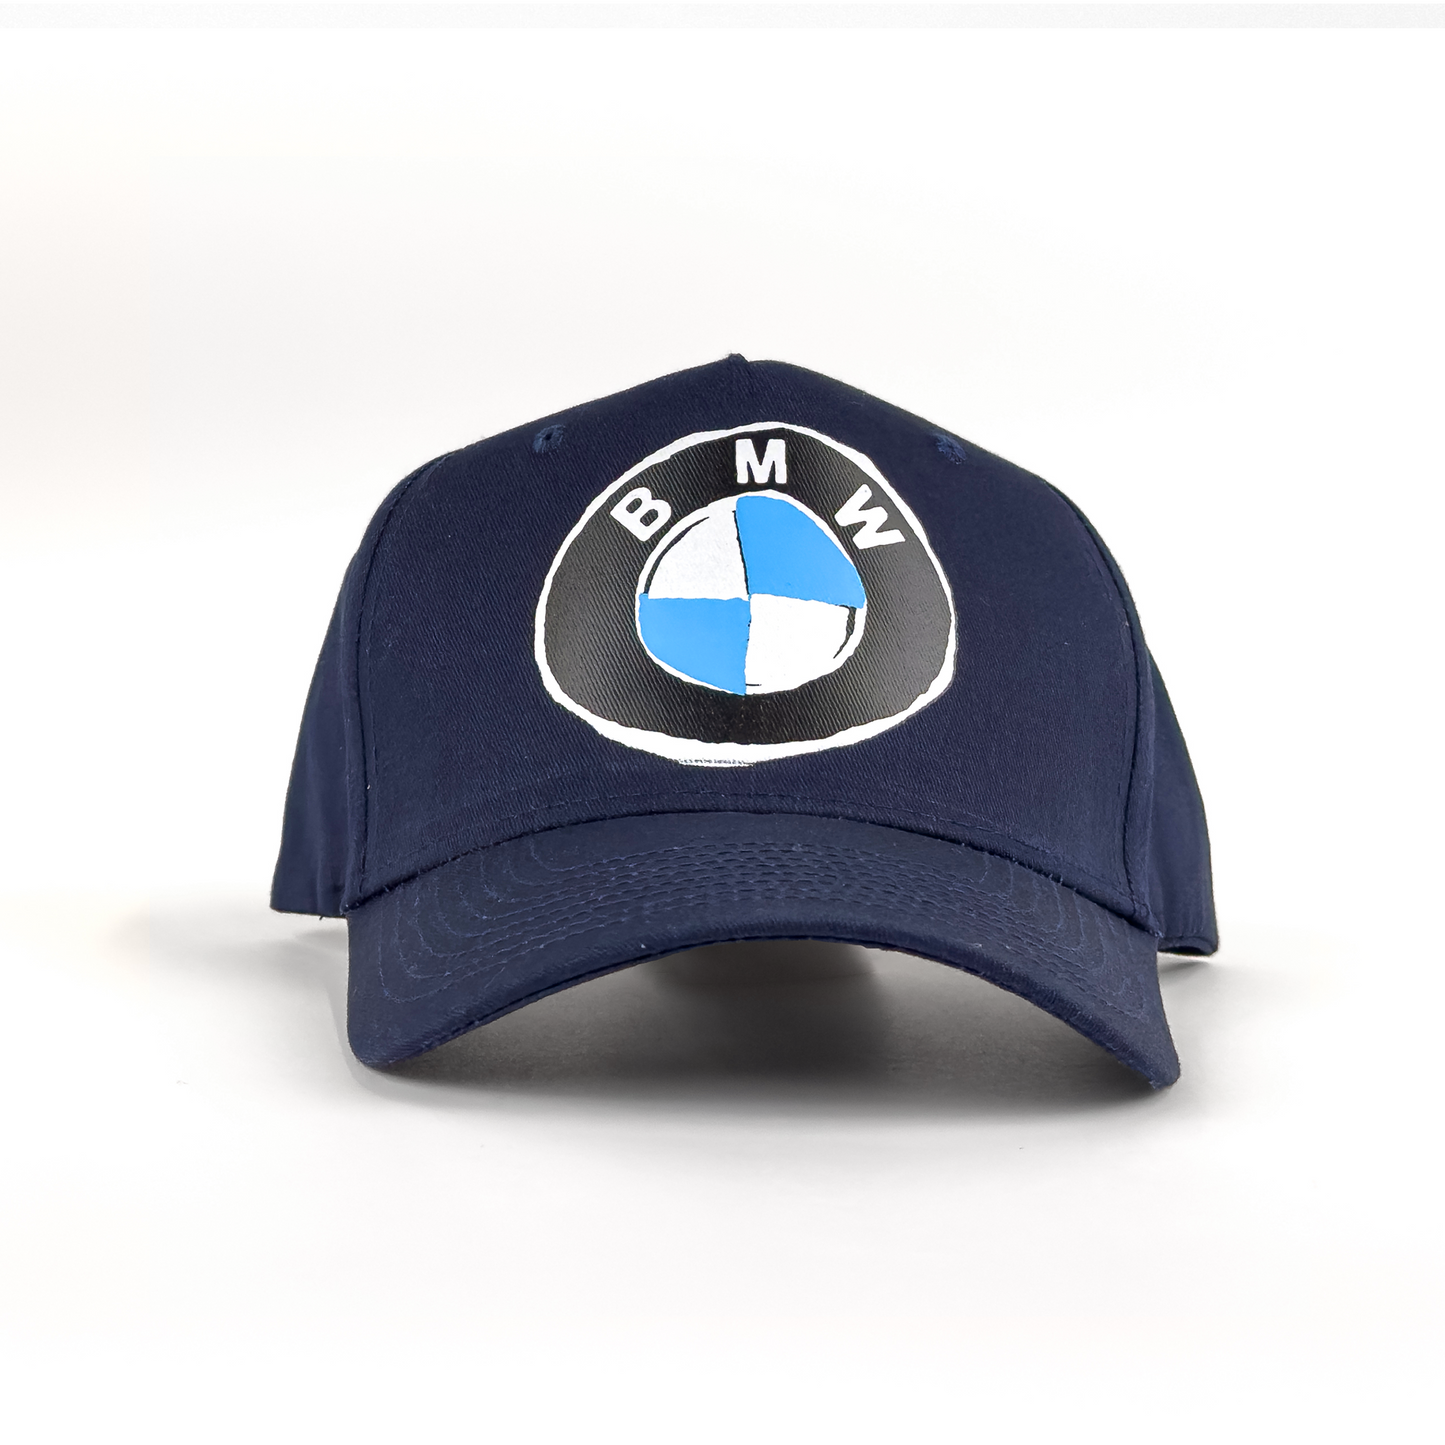 BMW HAT - NAVY